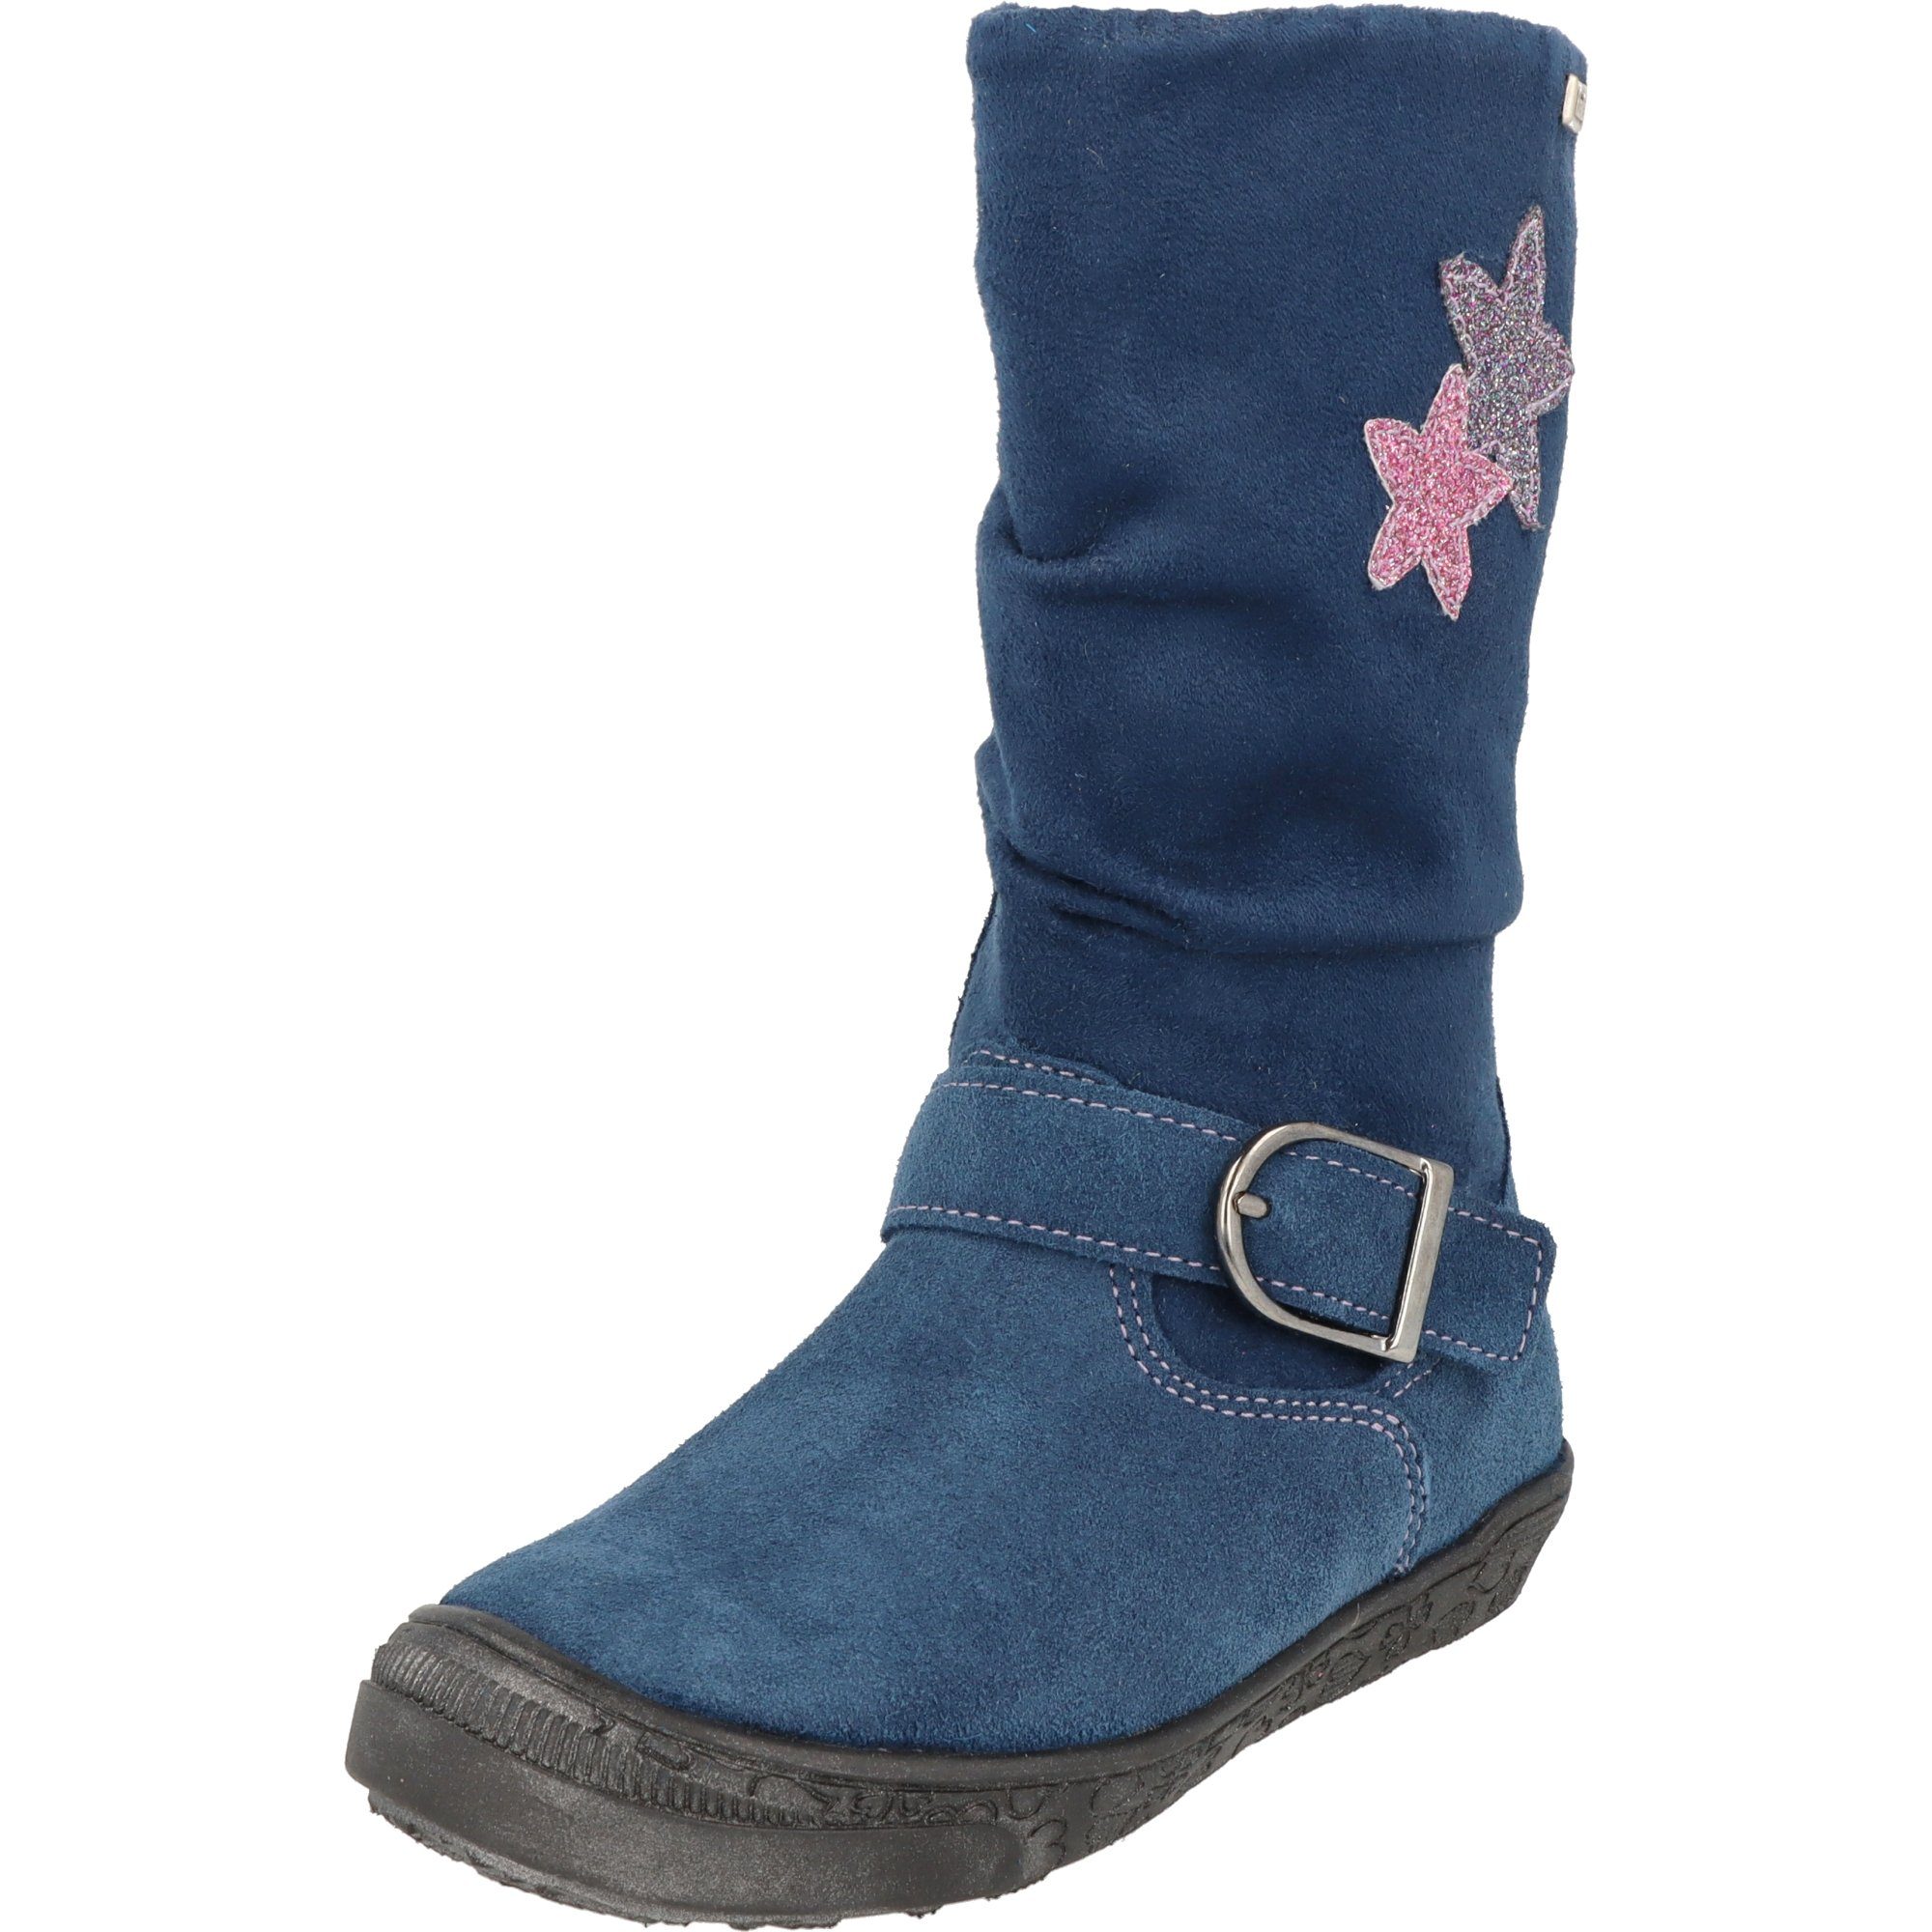 Geschenke von ausgewählten Marken Richter Mädchen Schuhe Leder Sterne Tex gefüttert 4152-456-6811 Blau Winterstiefel Stiefel